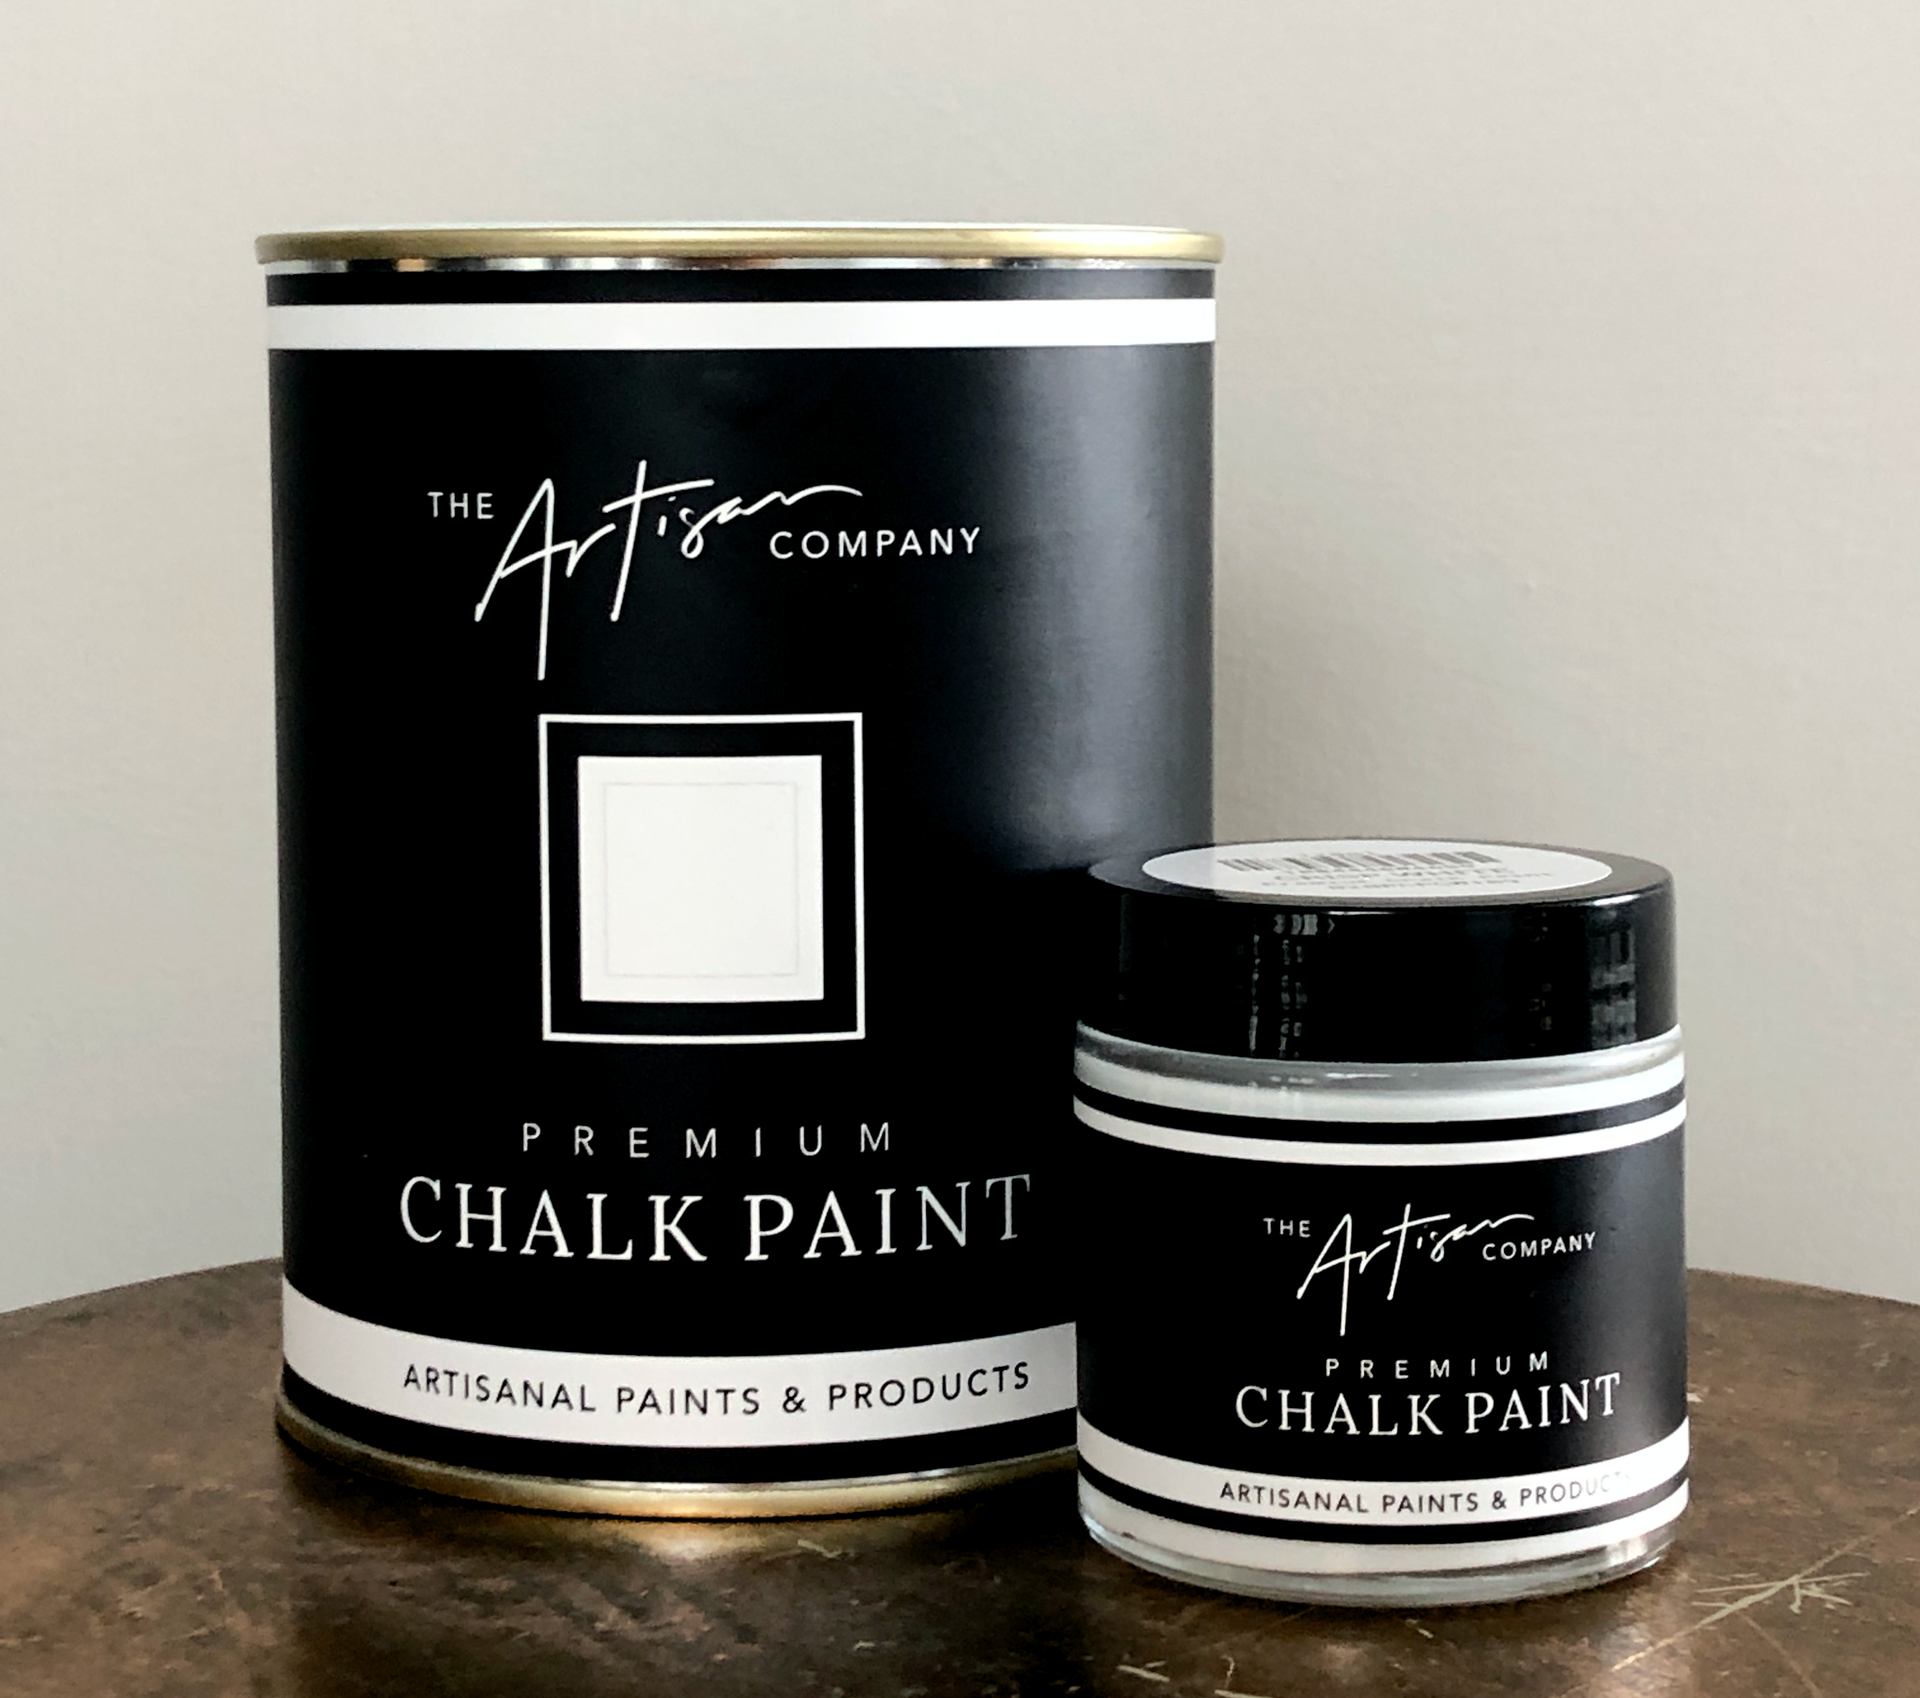 Imperial Linen - Premium Chalk Paint